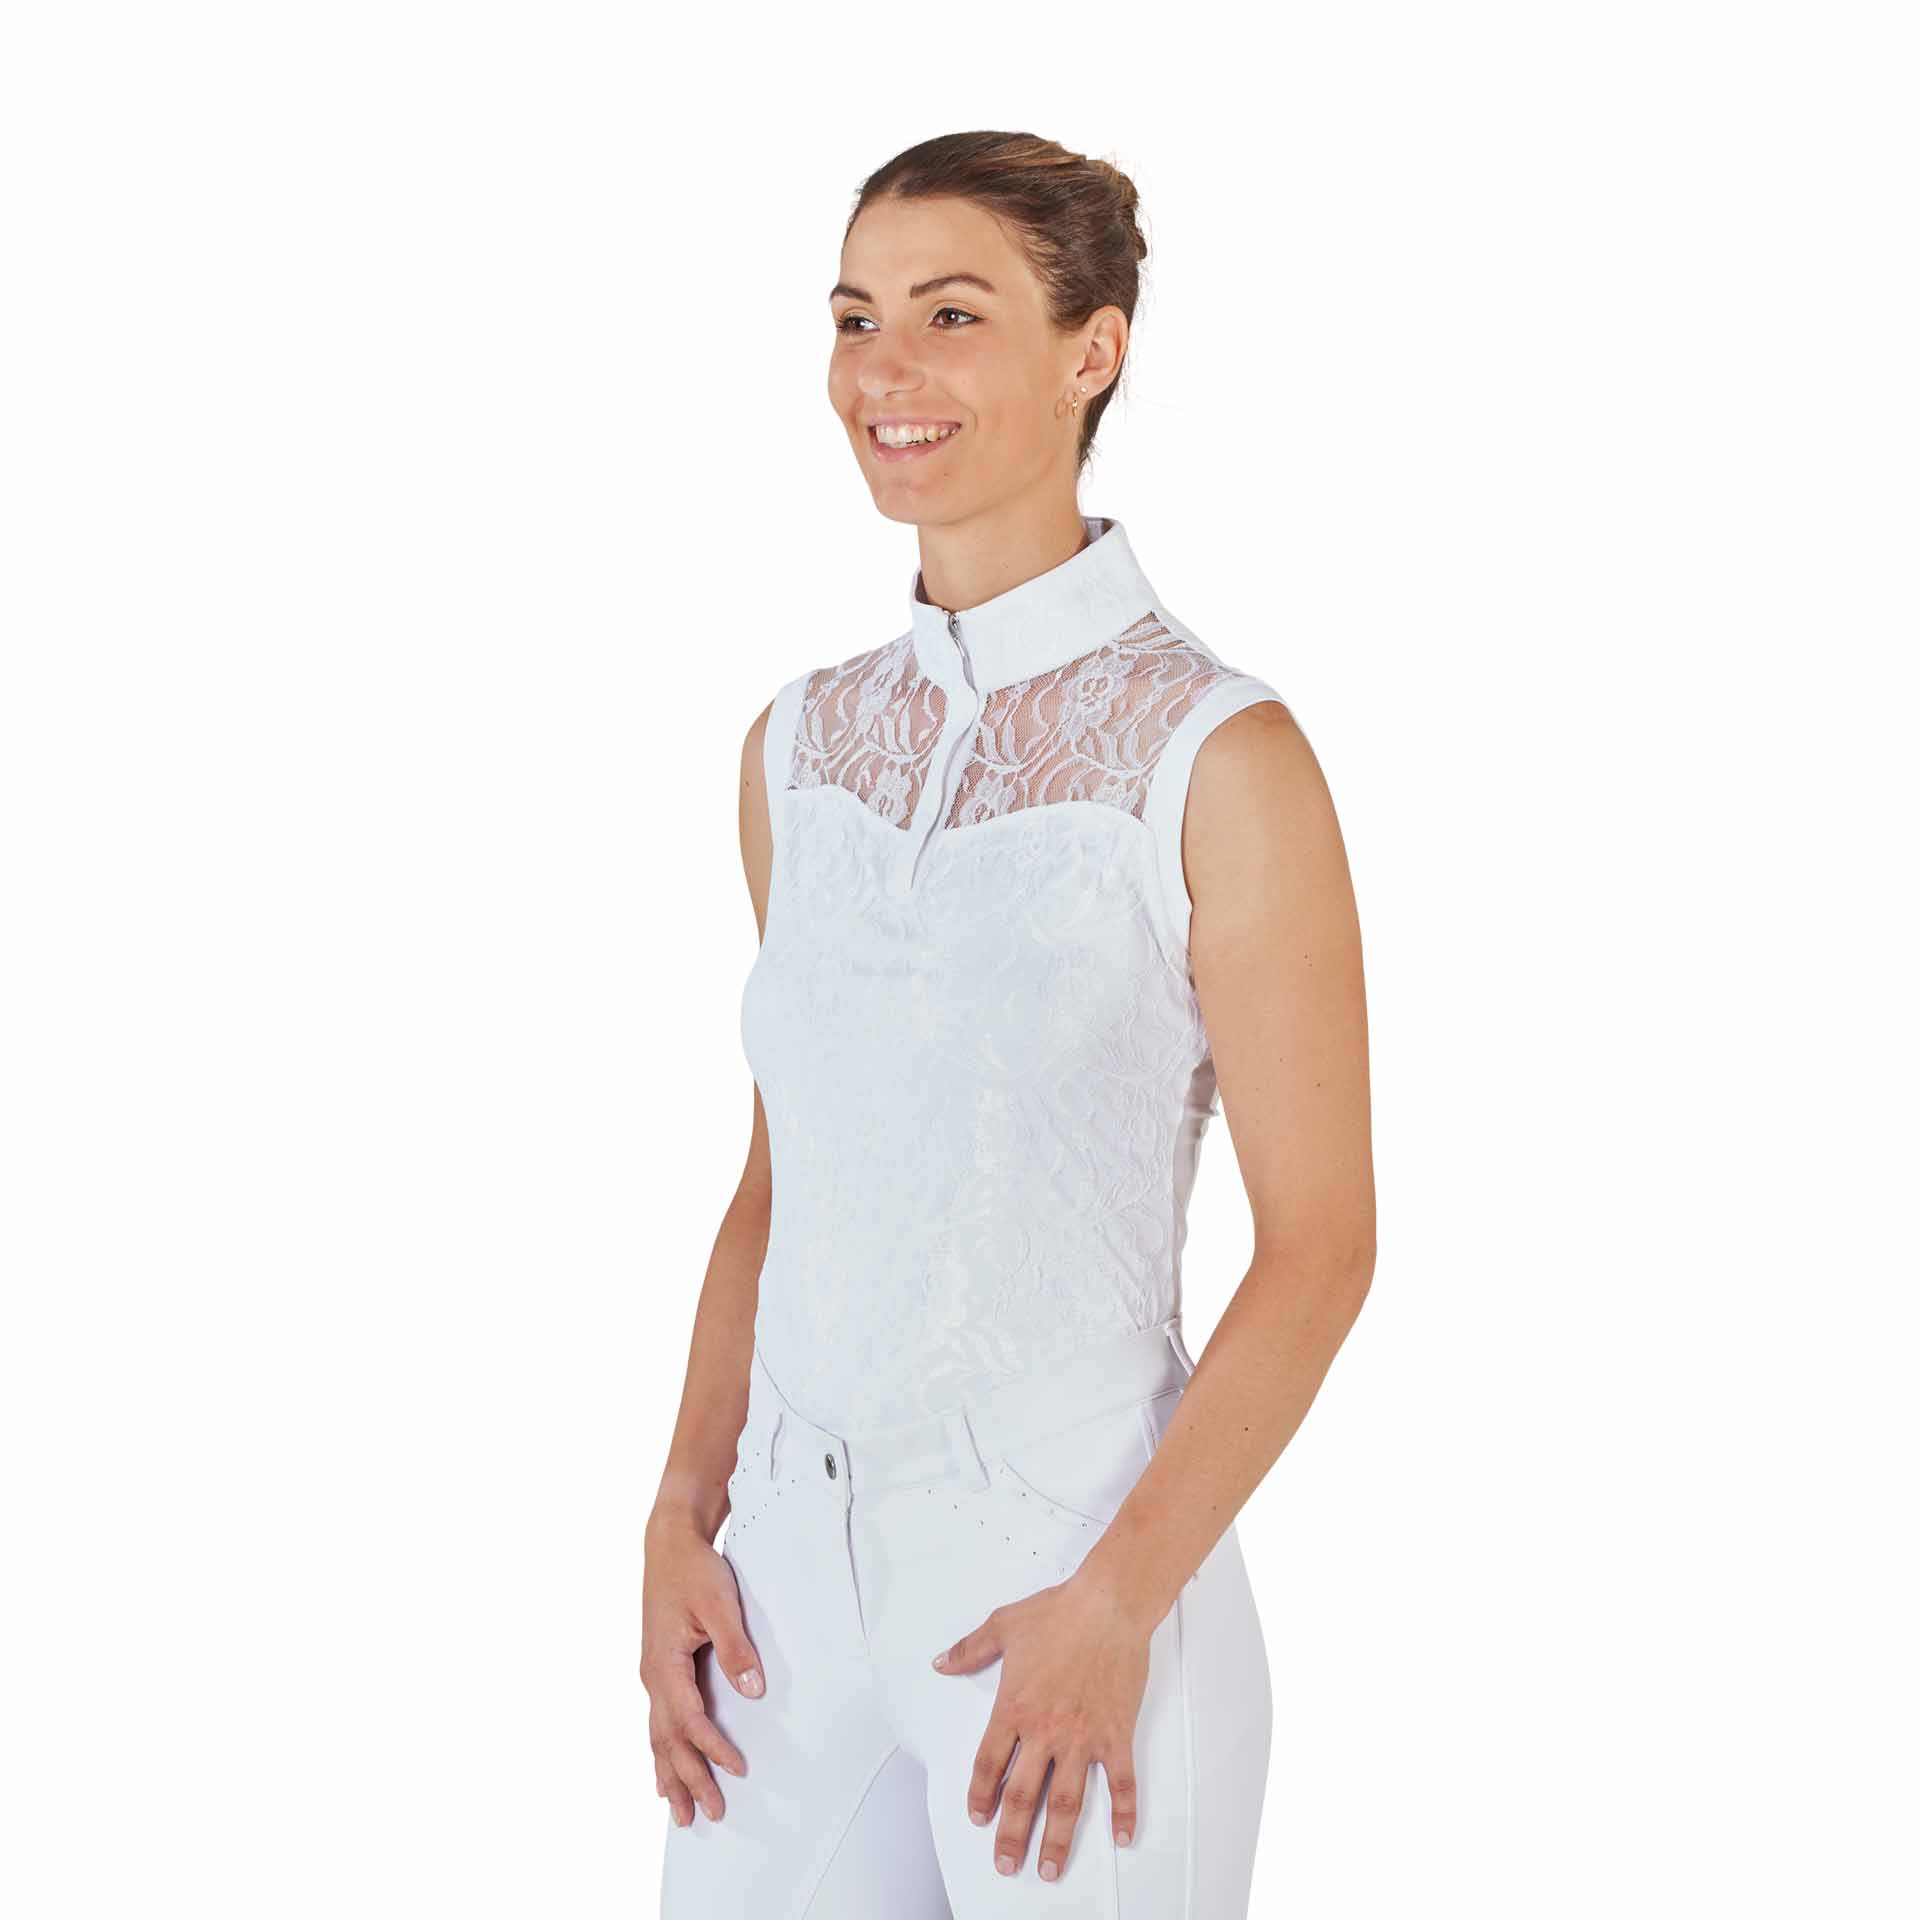 BUSSE Camicia da torneo equitazione AMADORA, senza maniche XS bianco